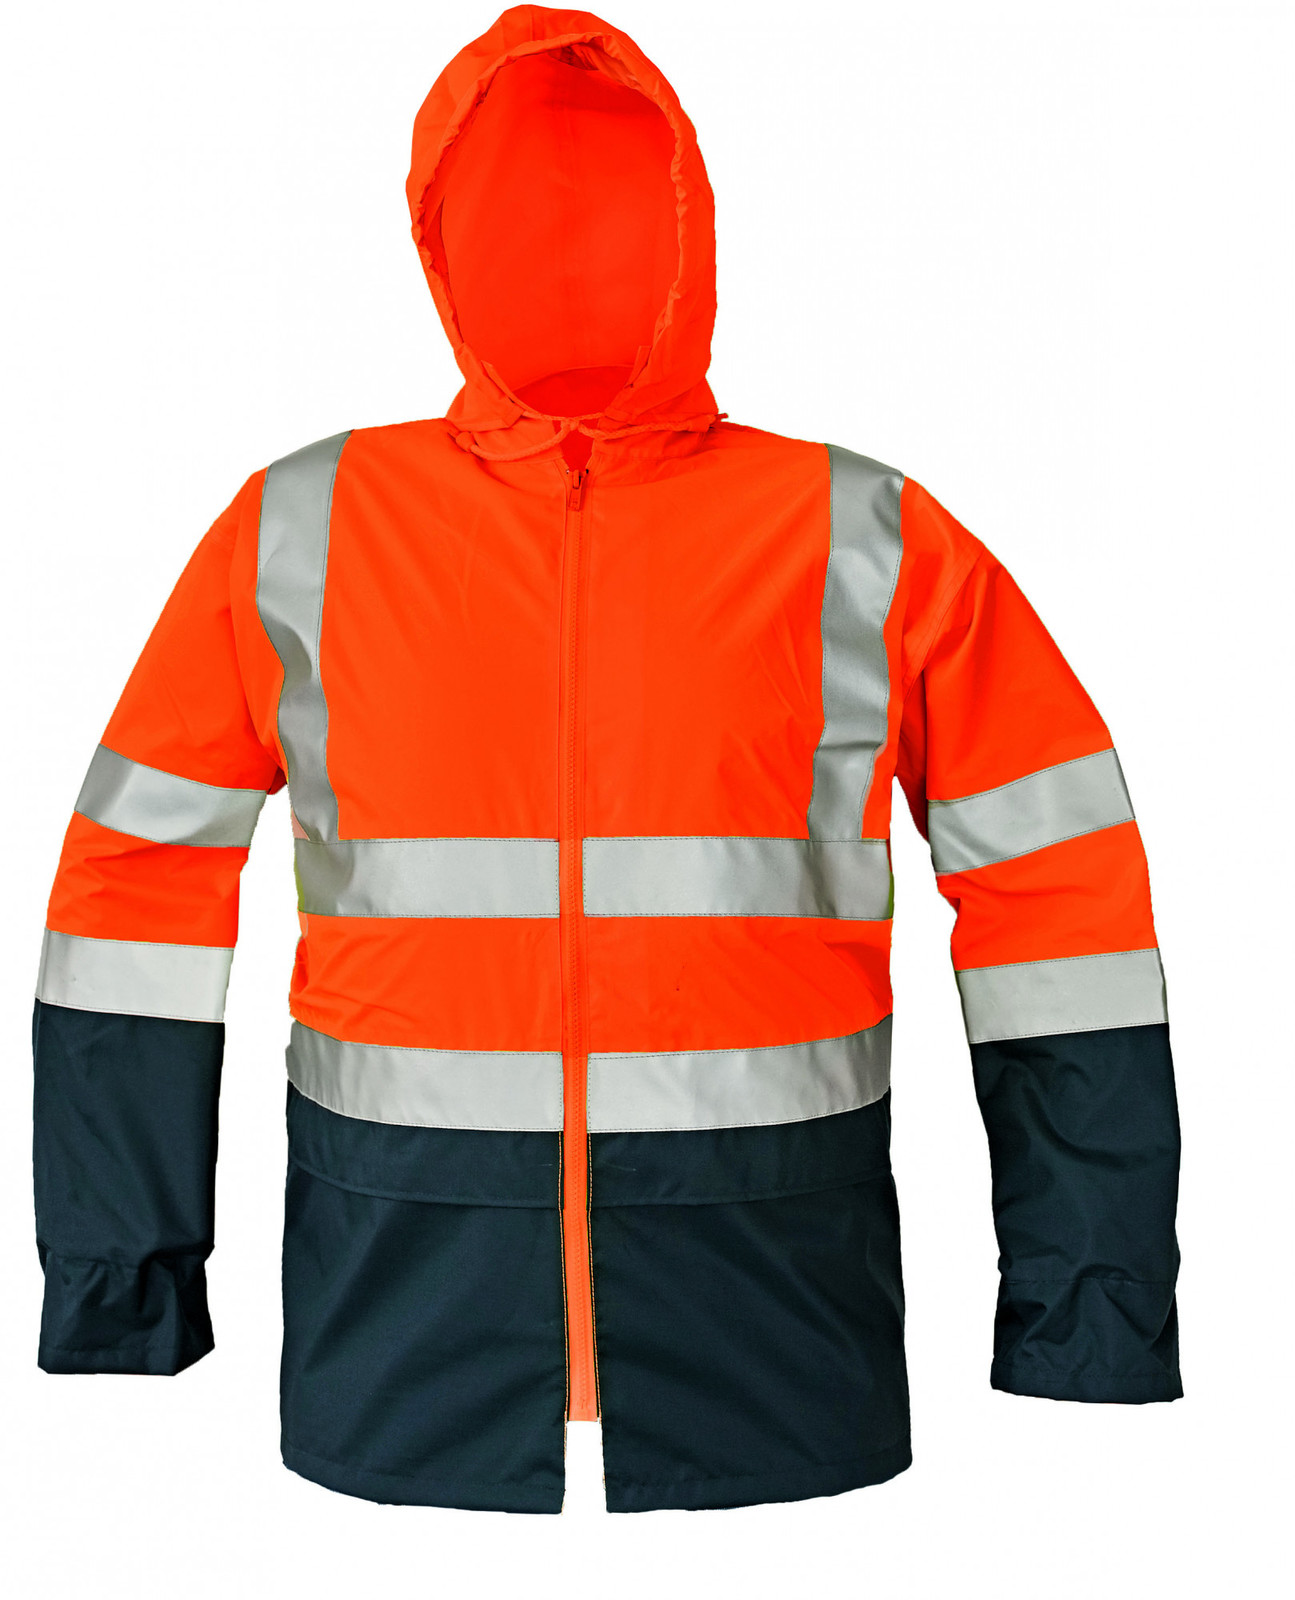 Reflexná pracovná bunda Epping - veľkosť: M, farba: oranžová/navy